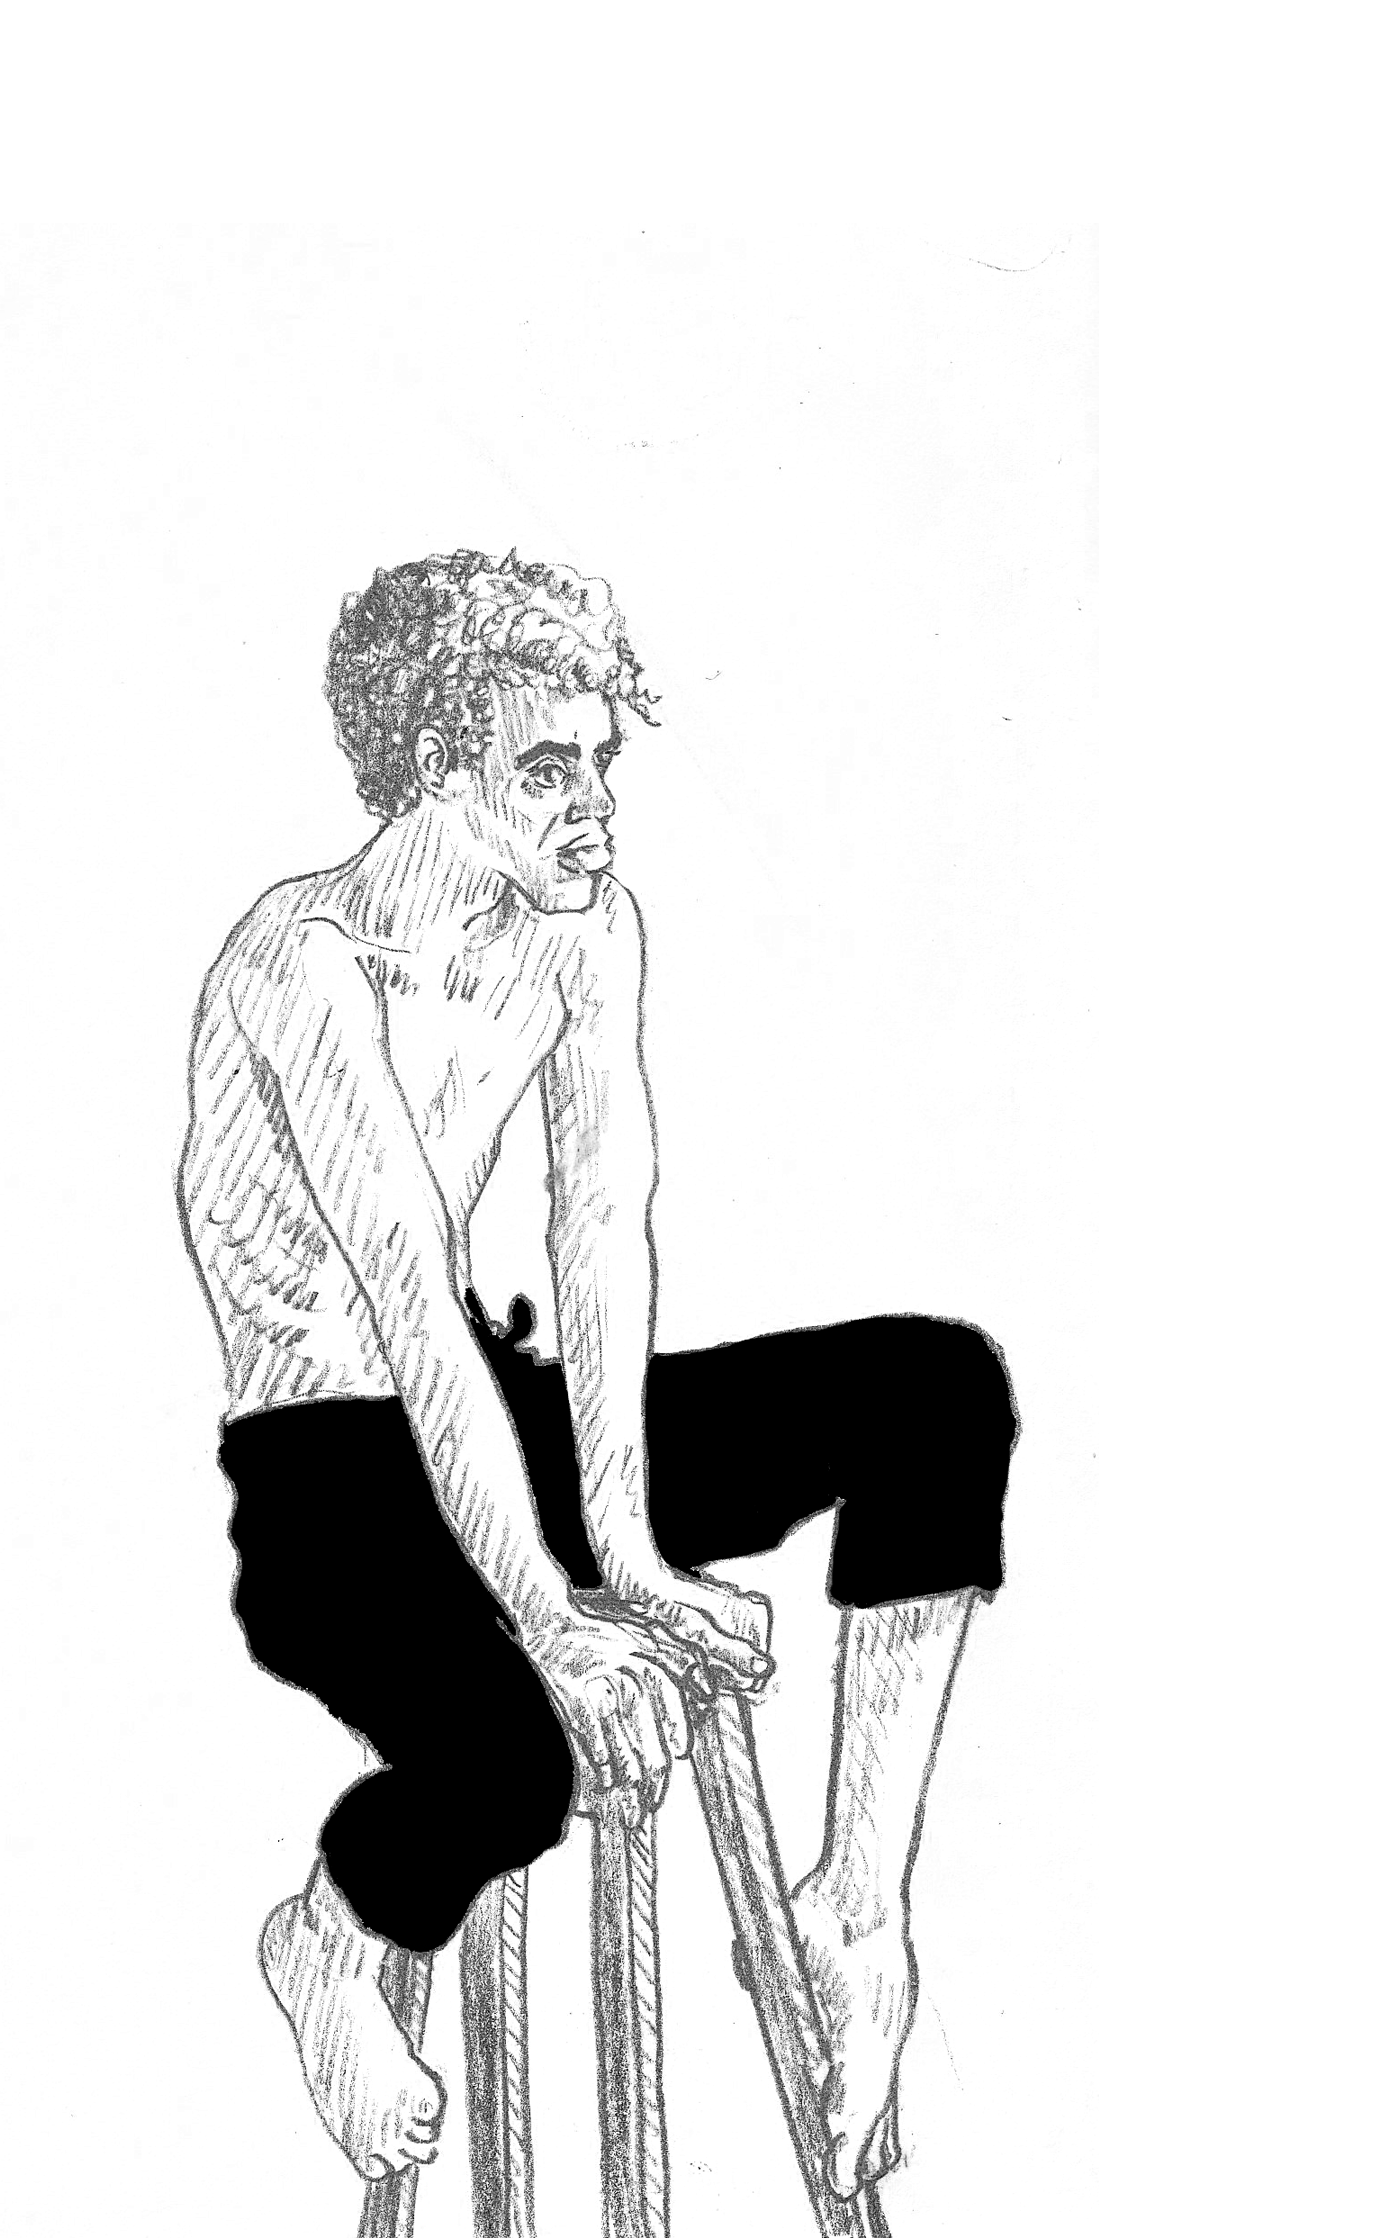 Eine Illustration eines Mannes, der auf einem hohem Hocker sitzt